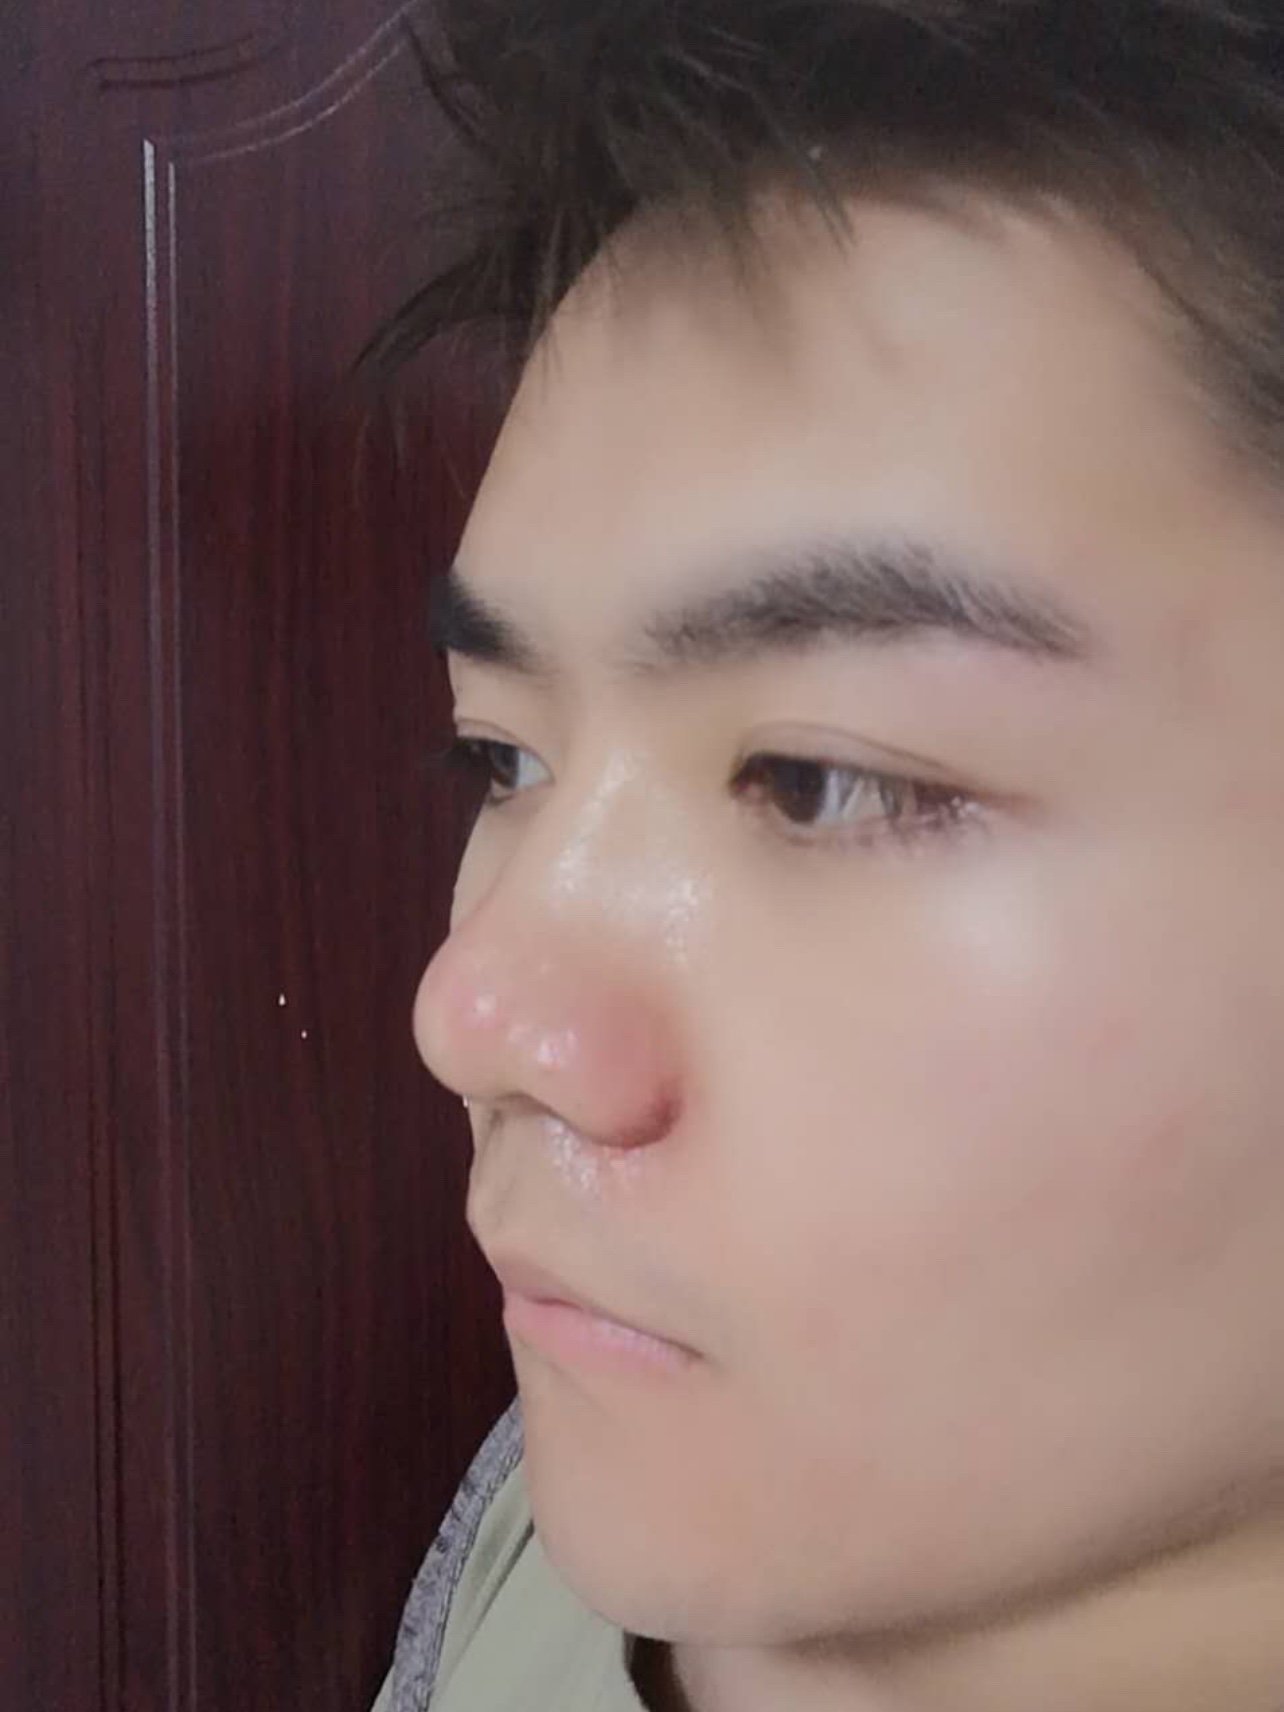 韩国优雅人整形外科——男生鼻子整容模板来了 - 哔哩哔哩